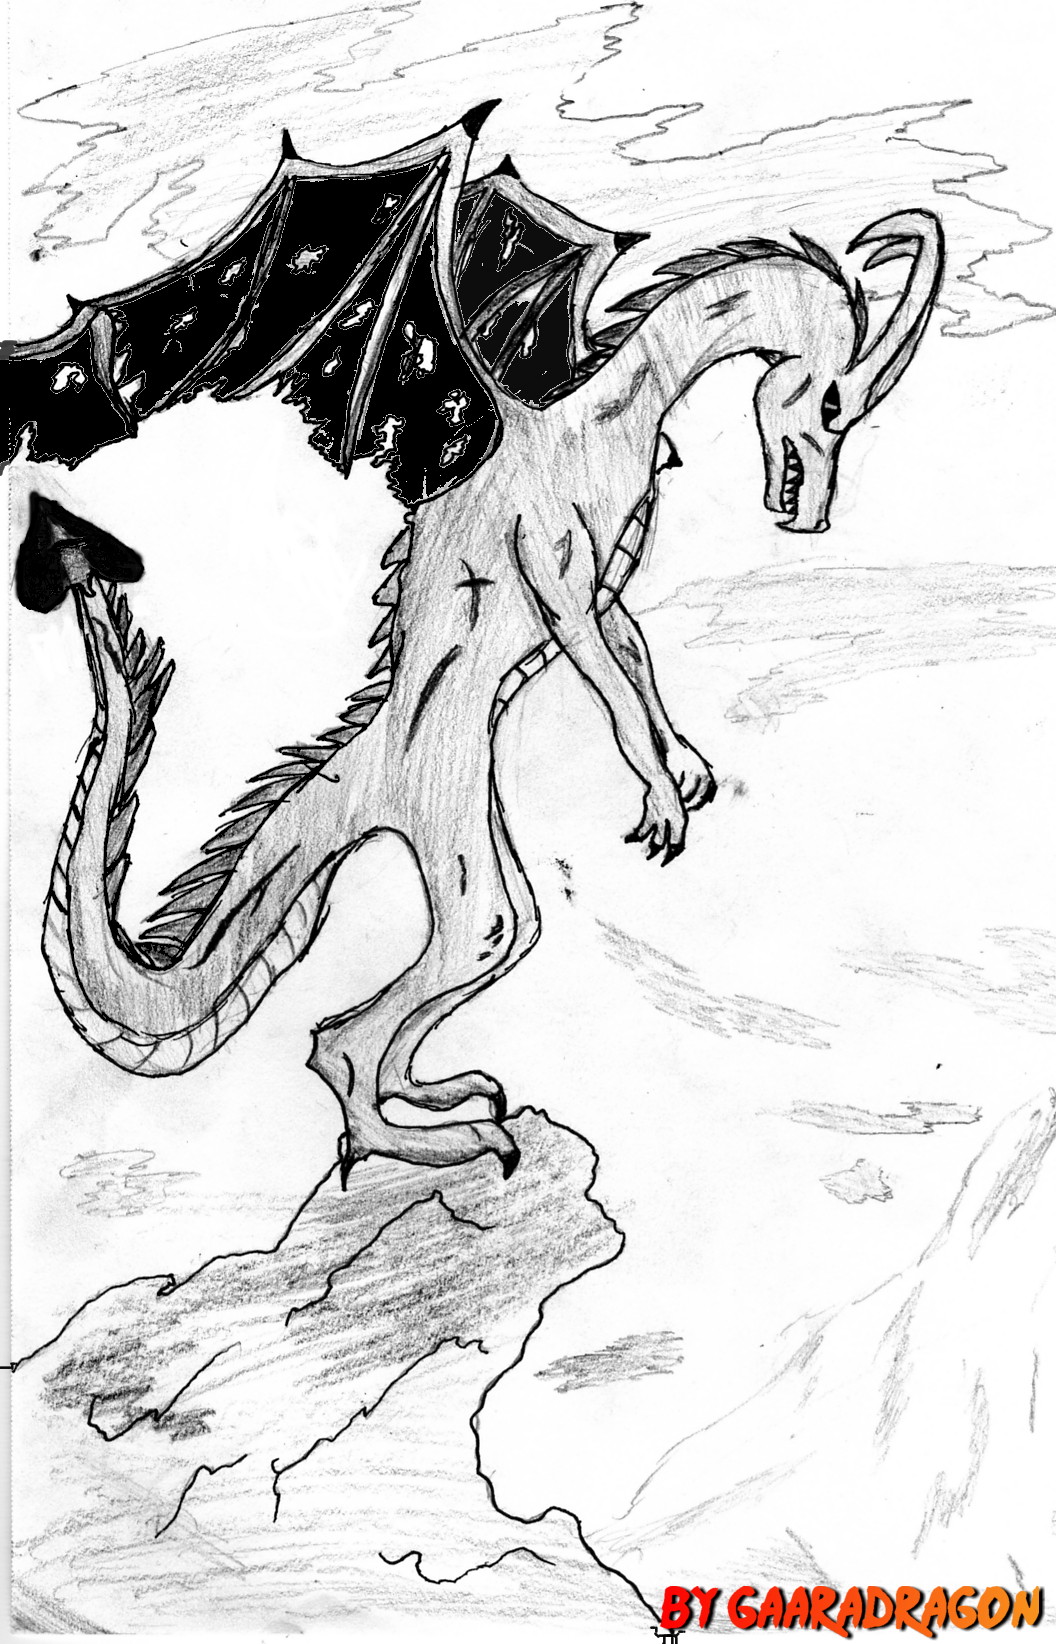 Battle Scarred Dragon by Gaaradragon